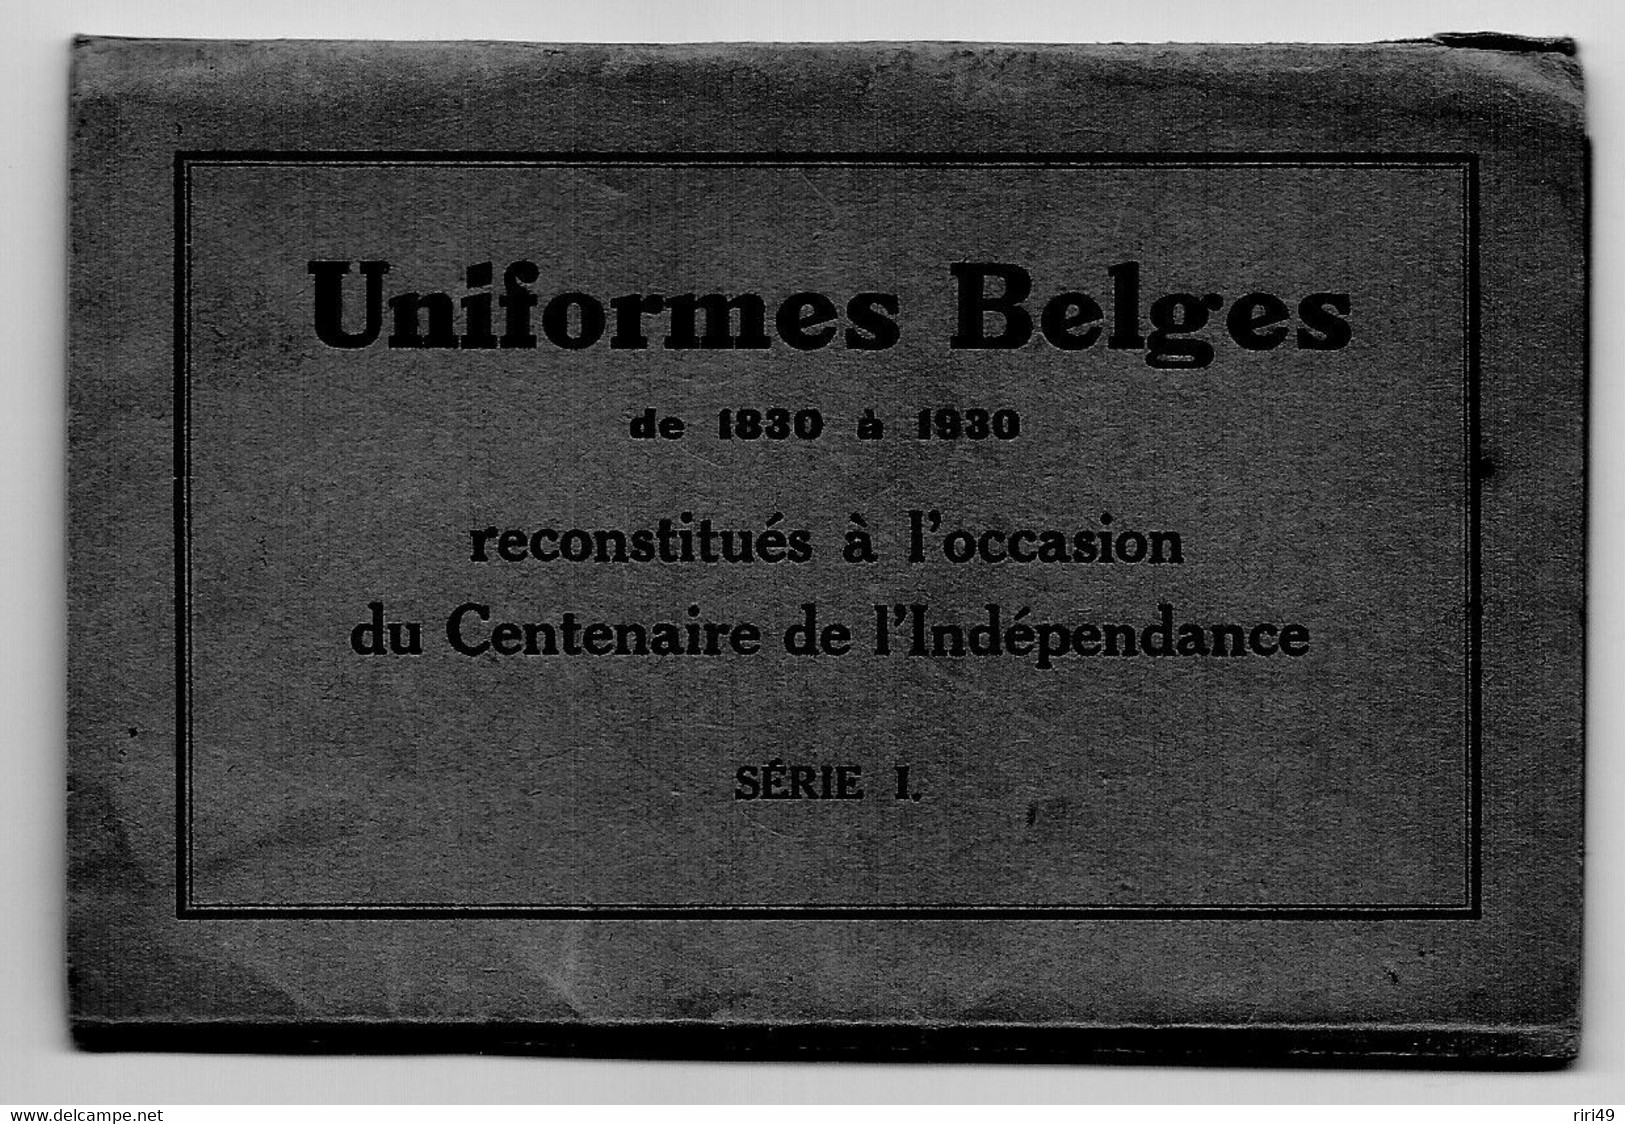 CPA Belgique Tirailleur Liegeois,1930 Fête Militaire Du Centenaire Belle Carte, N°3, 3e Scanne D'où Vient La Carte - Verzamelingen & Kavels